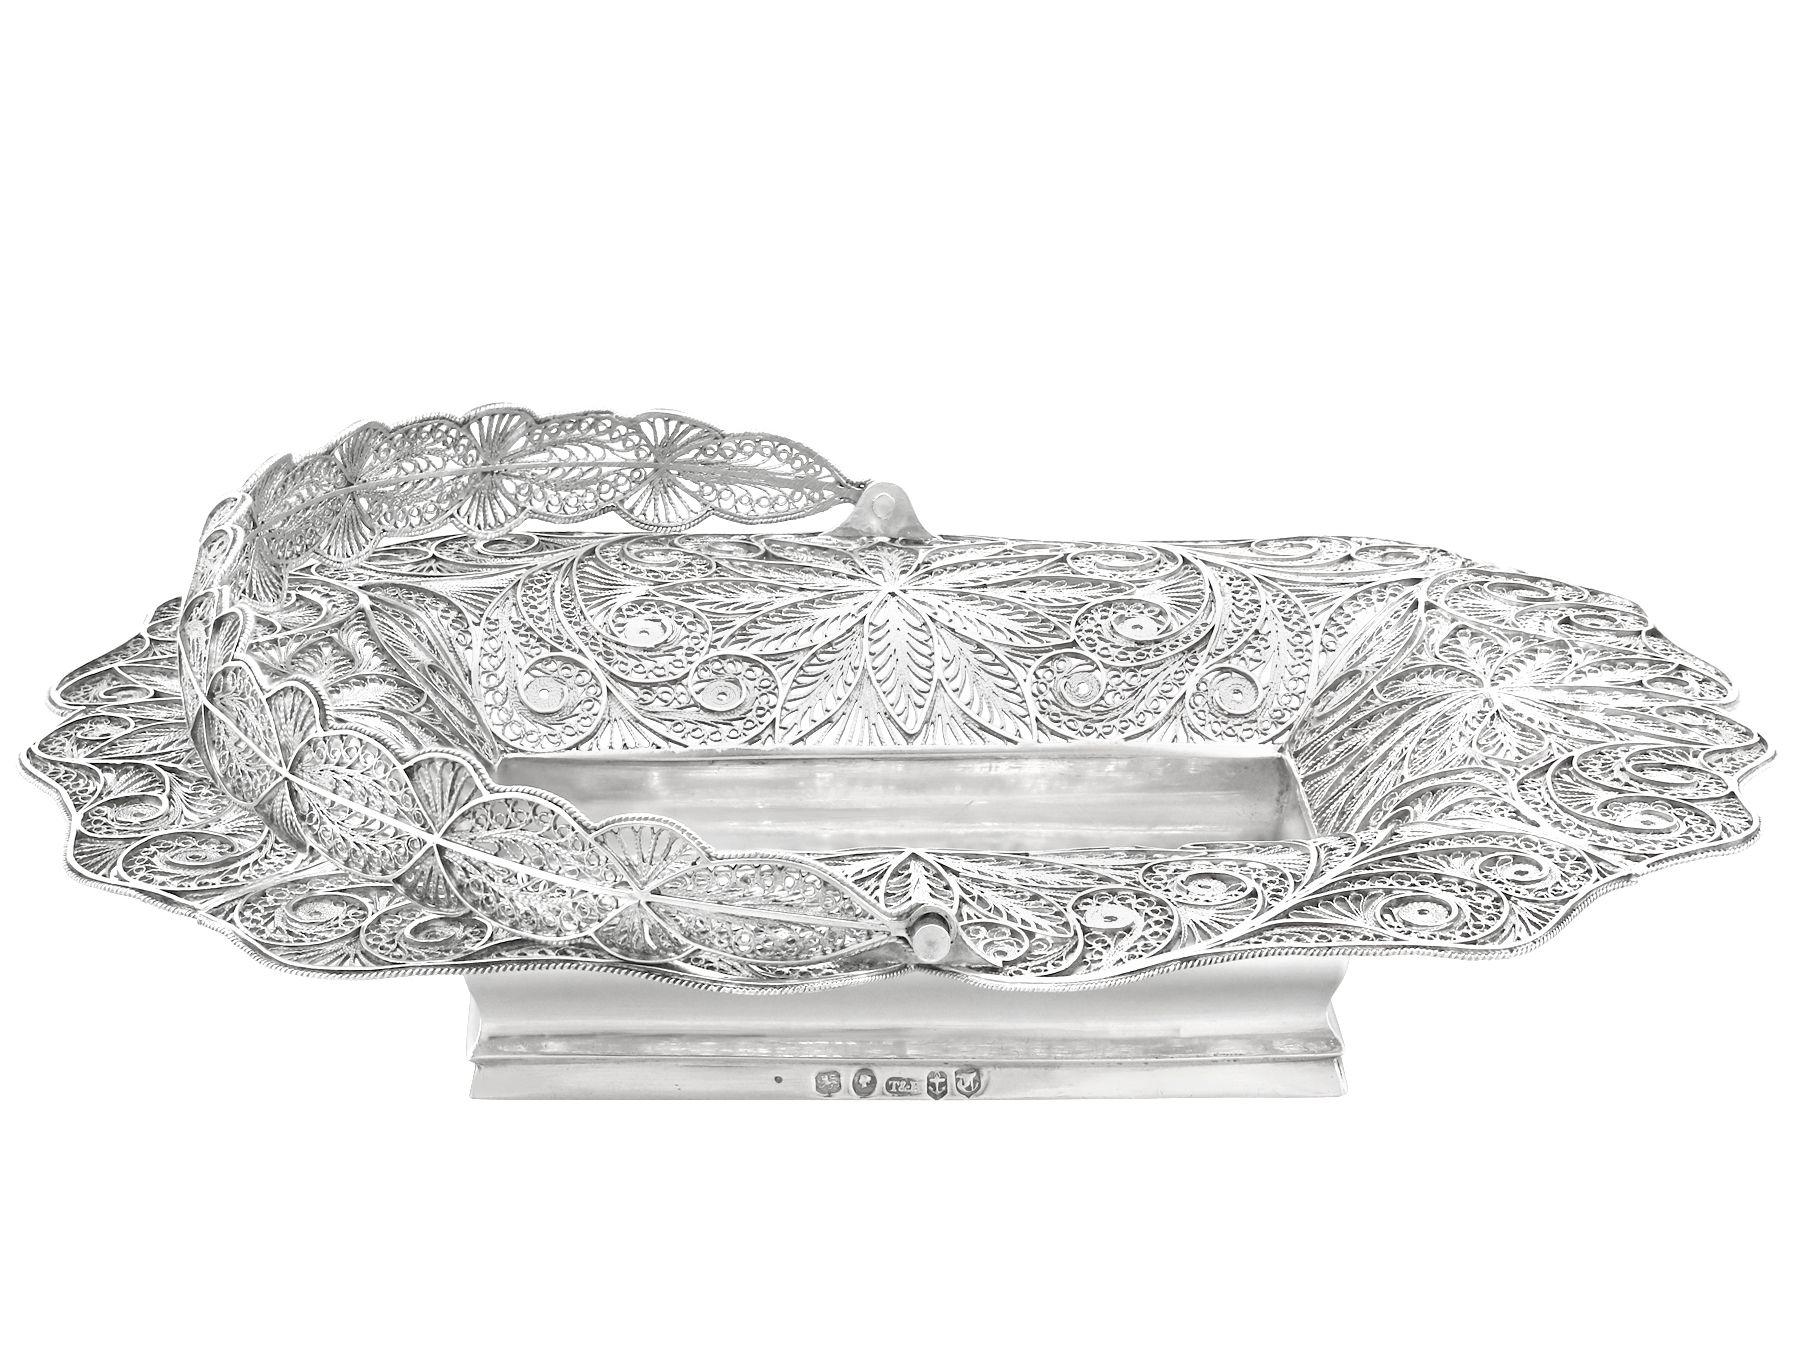 Eine außergewöhnliche, feine und beeindruckende und seltene antiken viktorianischen englischen Sterling Silber Swing behandelt bon bon Korb; eine Ergänzung zu unserer ornamentalen Silberwaren Sammlung.

Diese feinen antiken viktorianischen